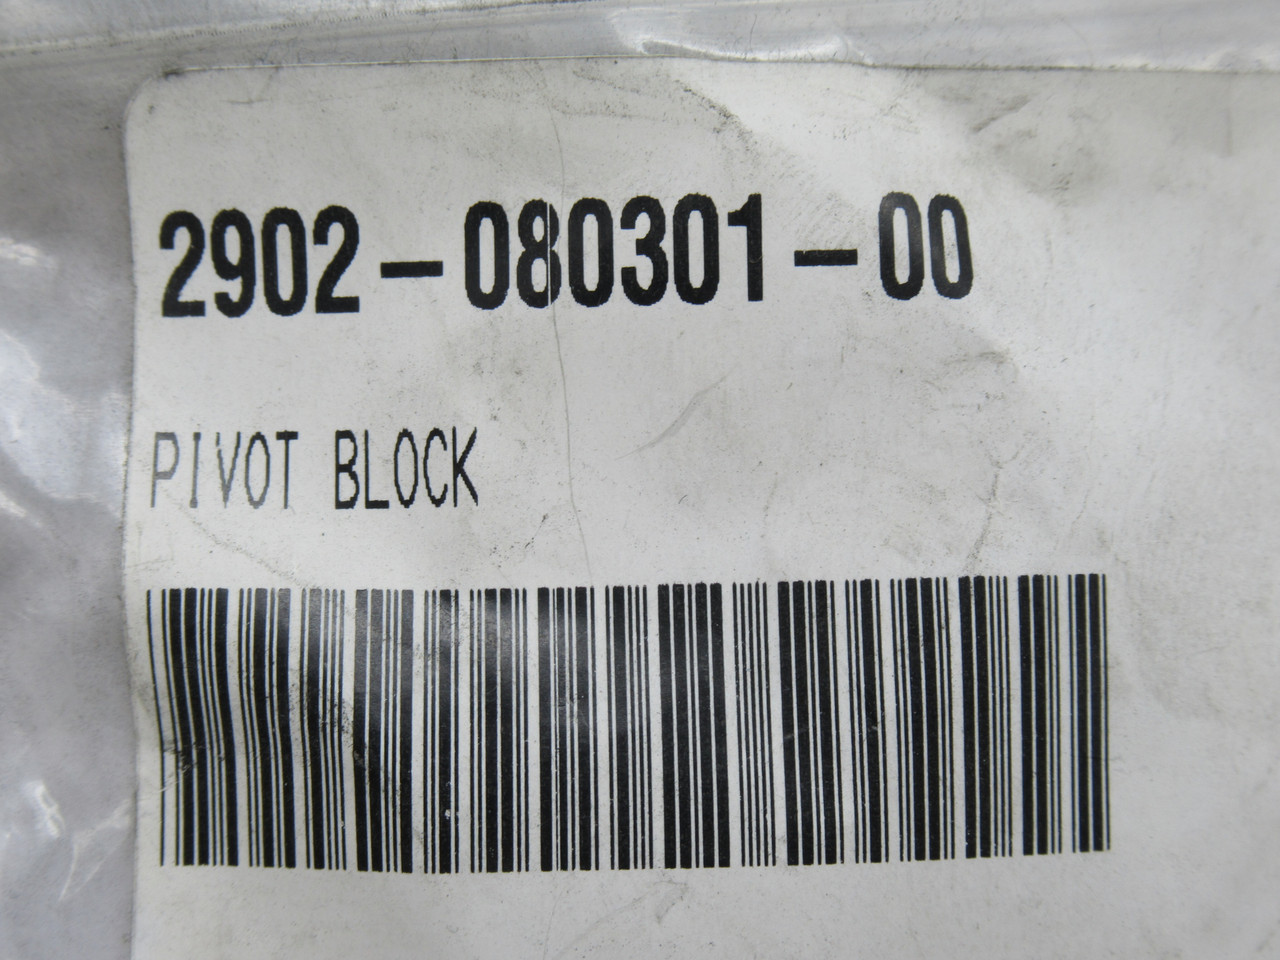 Mosca 2902-080301-00 Pivot Block For Mosca Dispenser 1" NOP